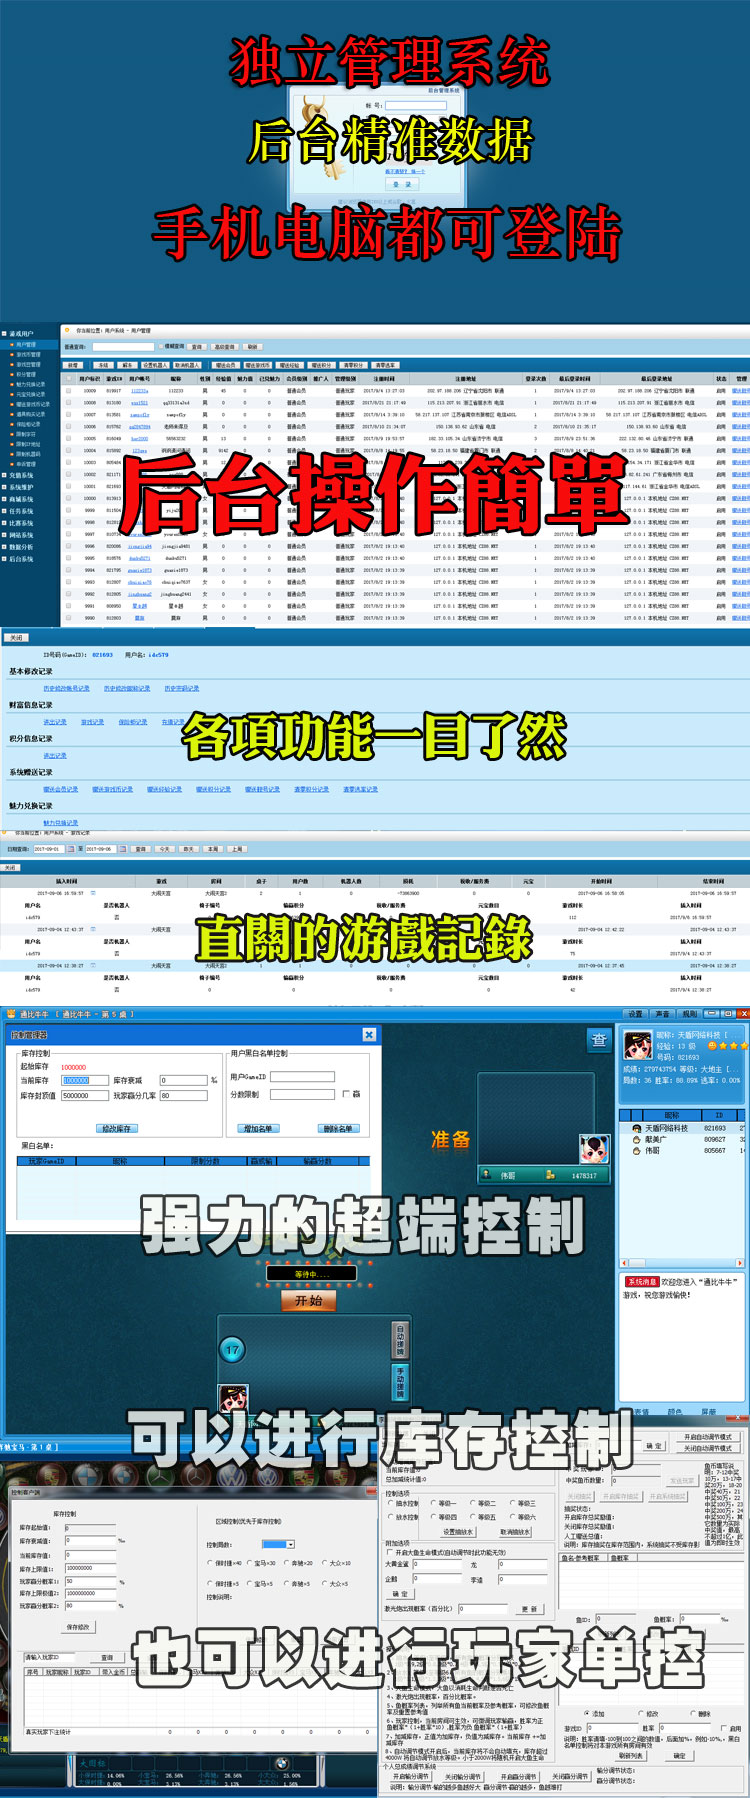 网狐6801荣耀316手机三网通源码二次开发 cocoslua源码定制搭建,网狐6801,第12张